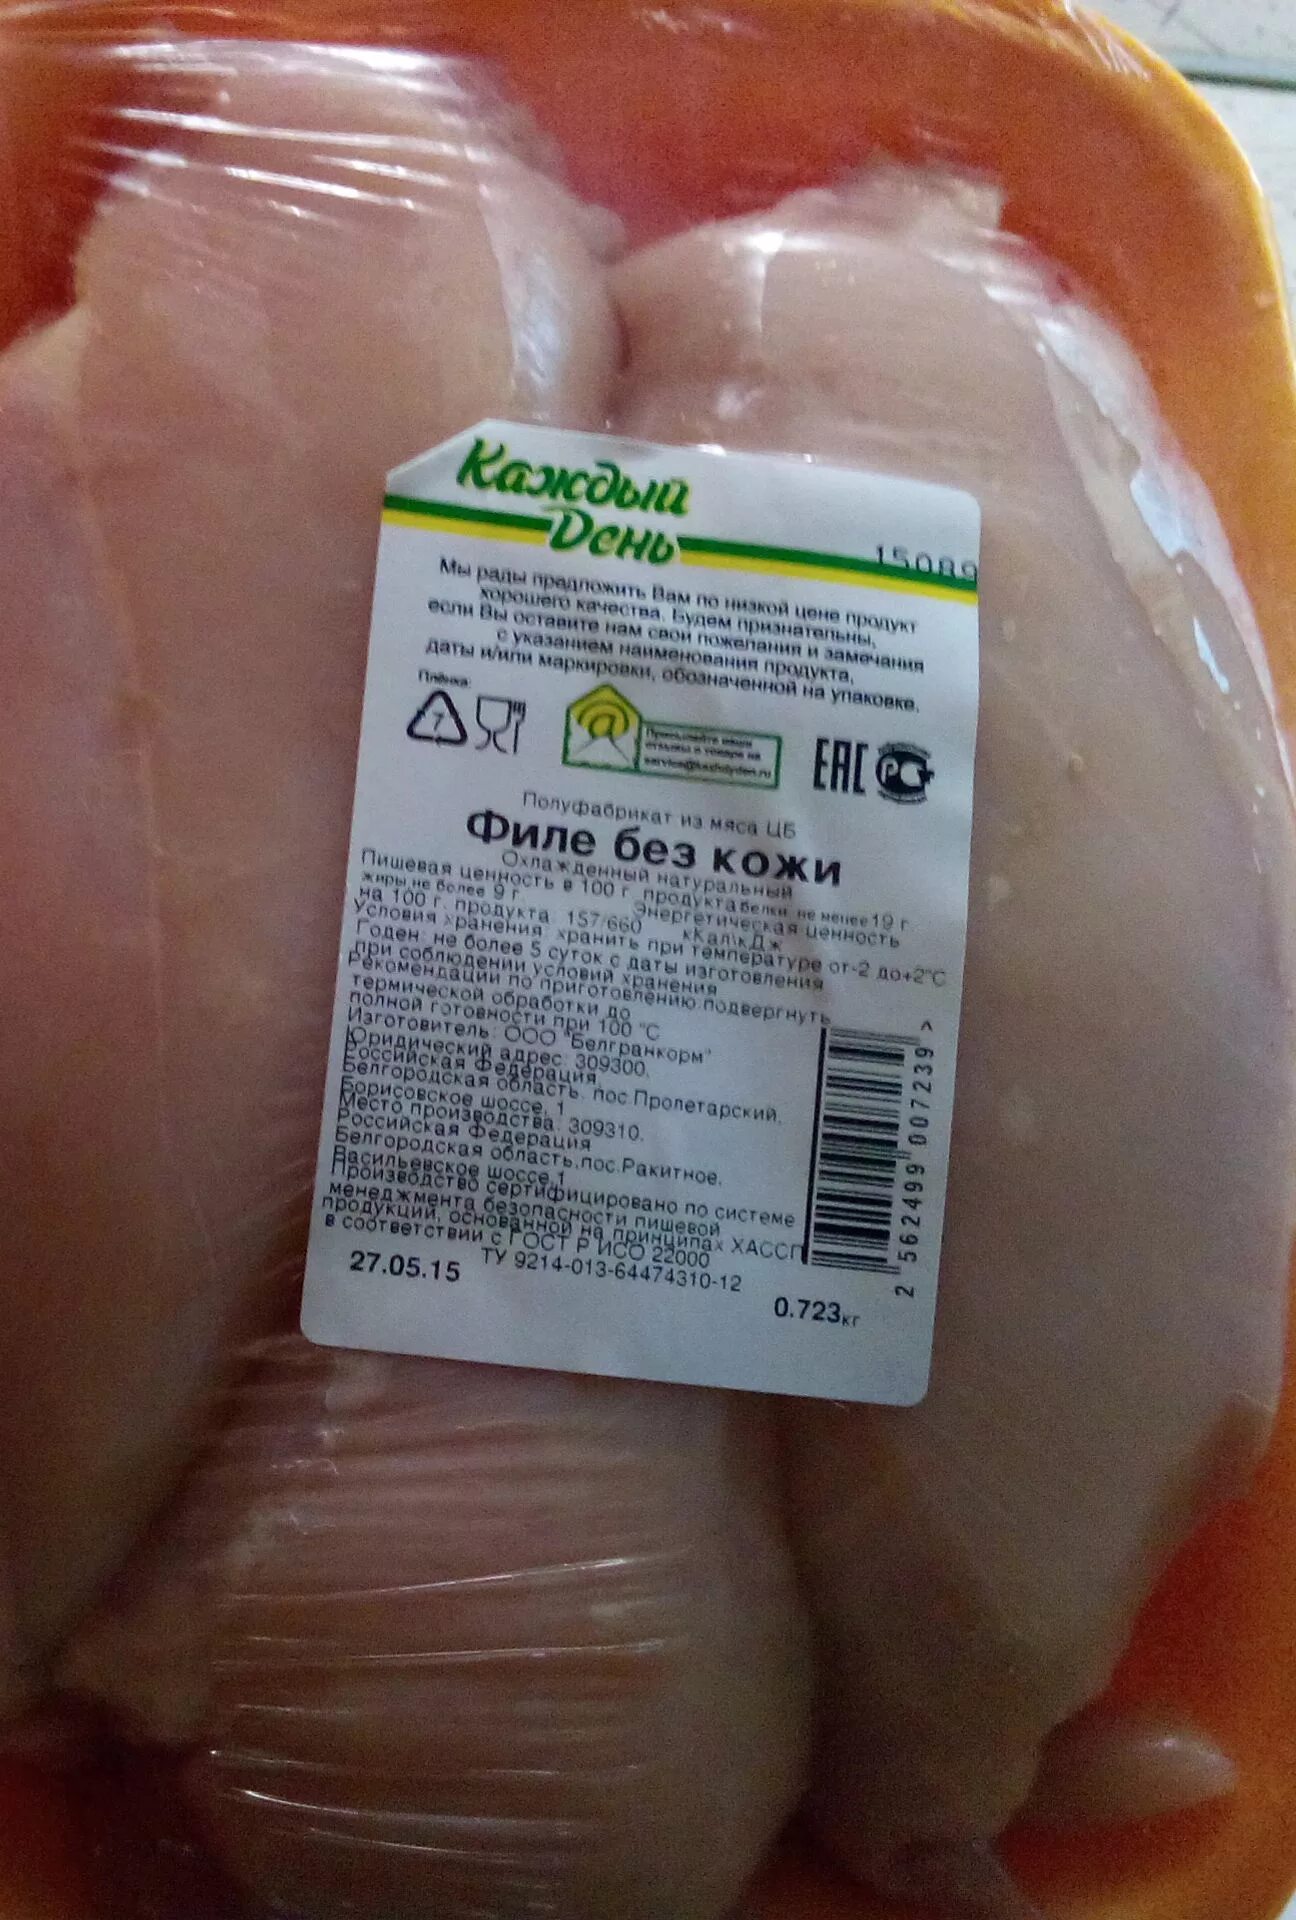 Куриная грудка в Краковке. Куриное филе в упаковке. Филе курицы в упаковке. Грудка в упаковке.